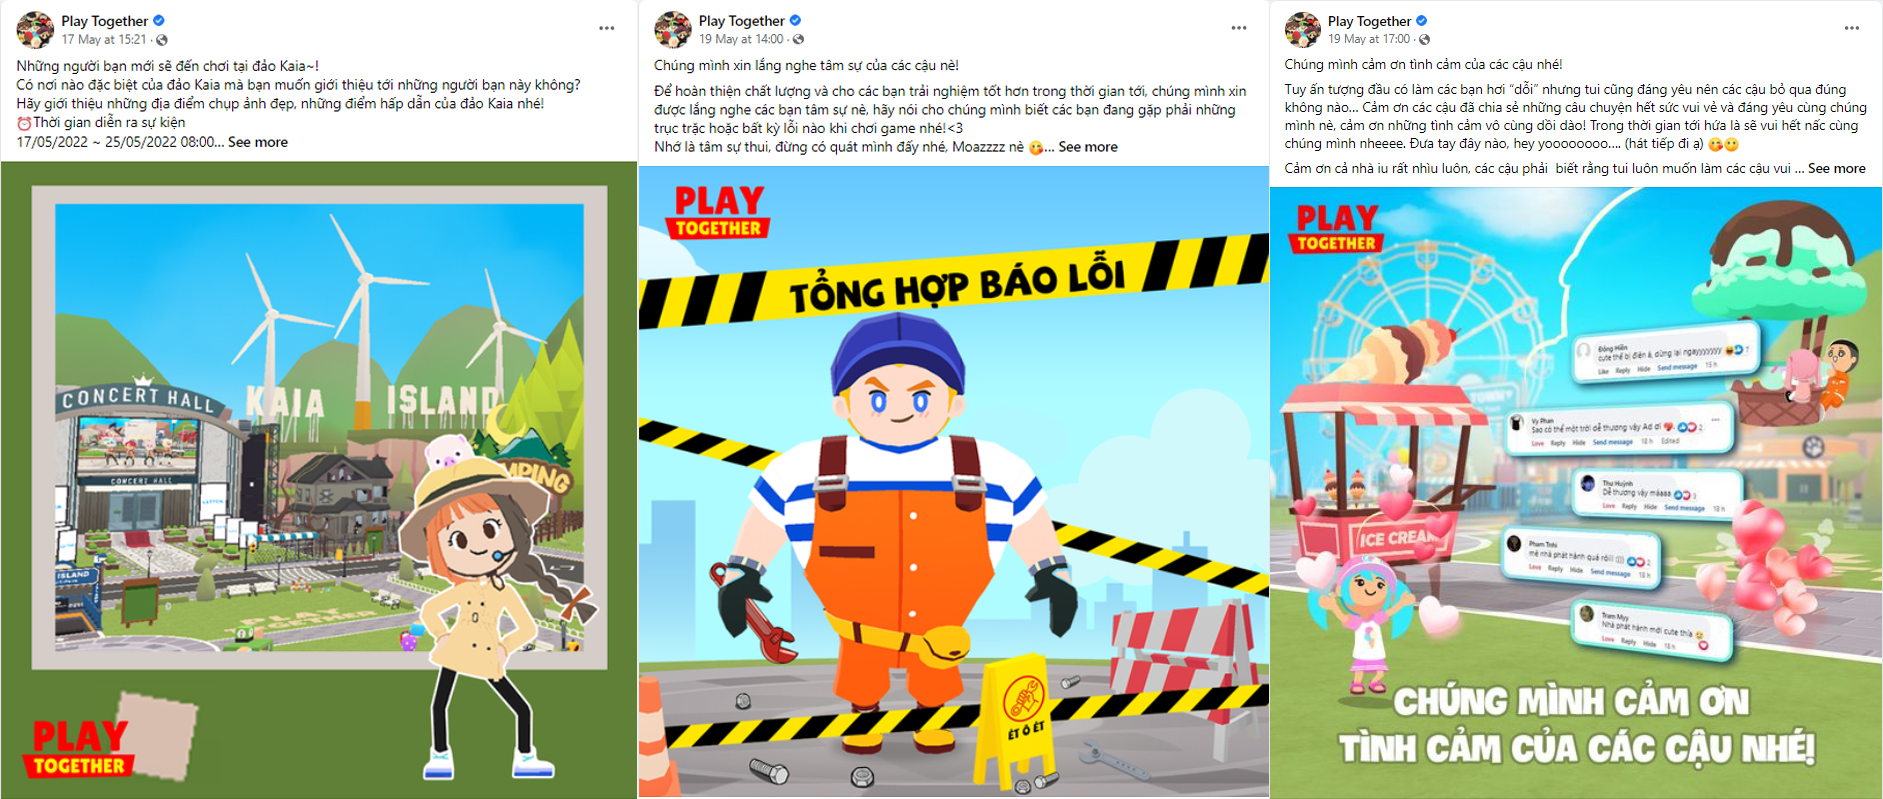 Game đang “hot” - Play Together có máy chủ tại Việt Nam, VNG phát hành - Play Together 4